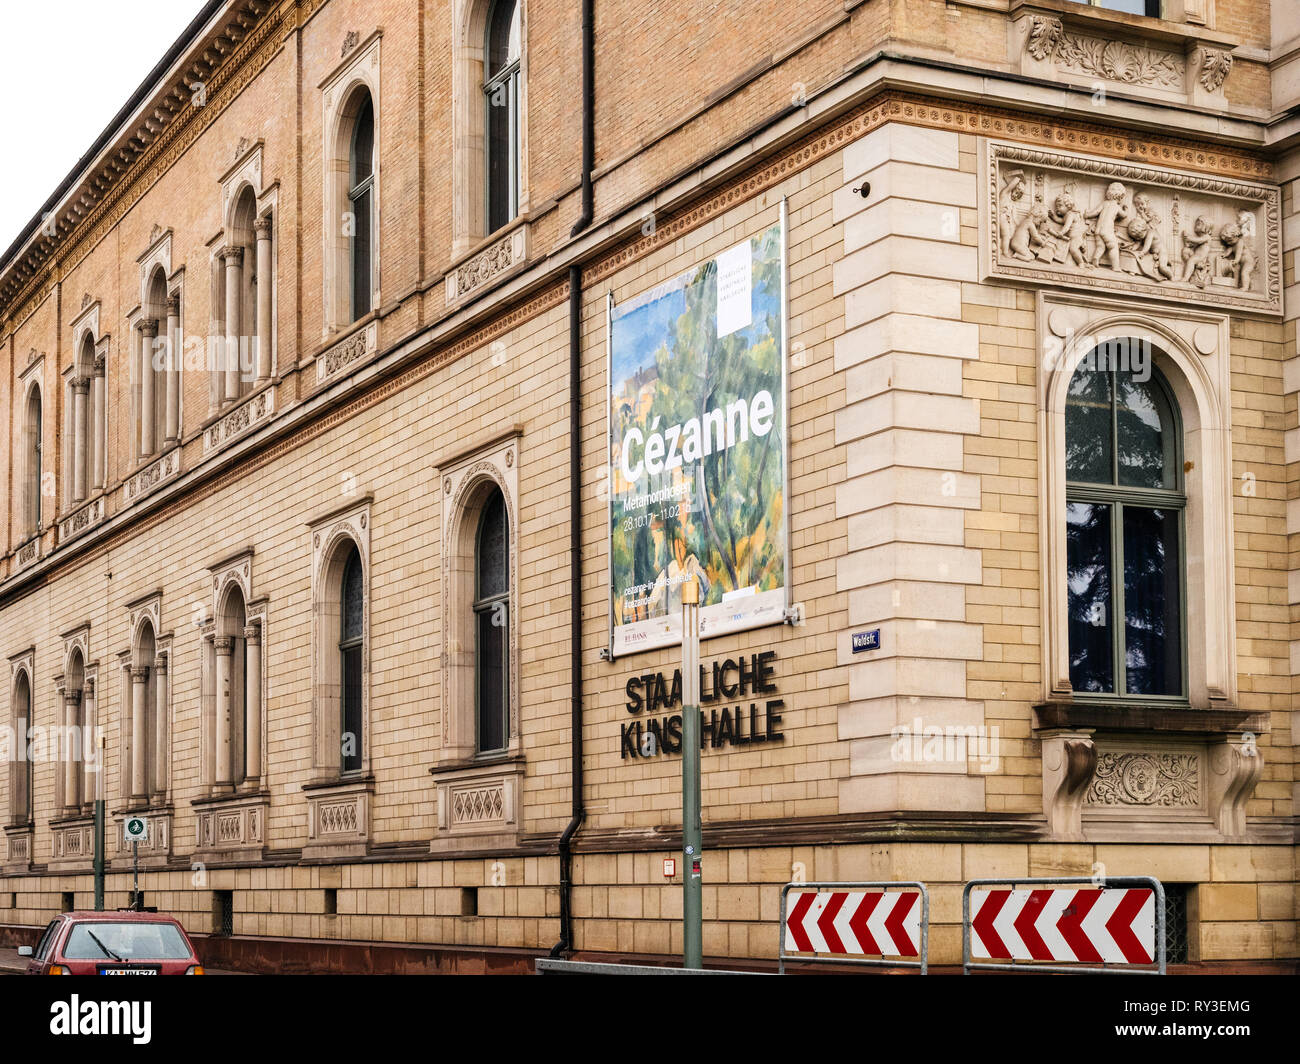 Karlsruhe, Germania - Ott 29, 2017: Staatliche Kunsthalle Karlsruhe Galleria d'Arte di stato su Hans-Thoma-Strasse con Cezanne pittore banner di esposizioni Foto Stock